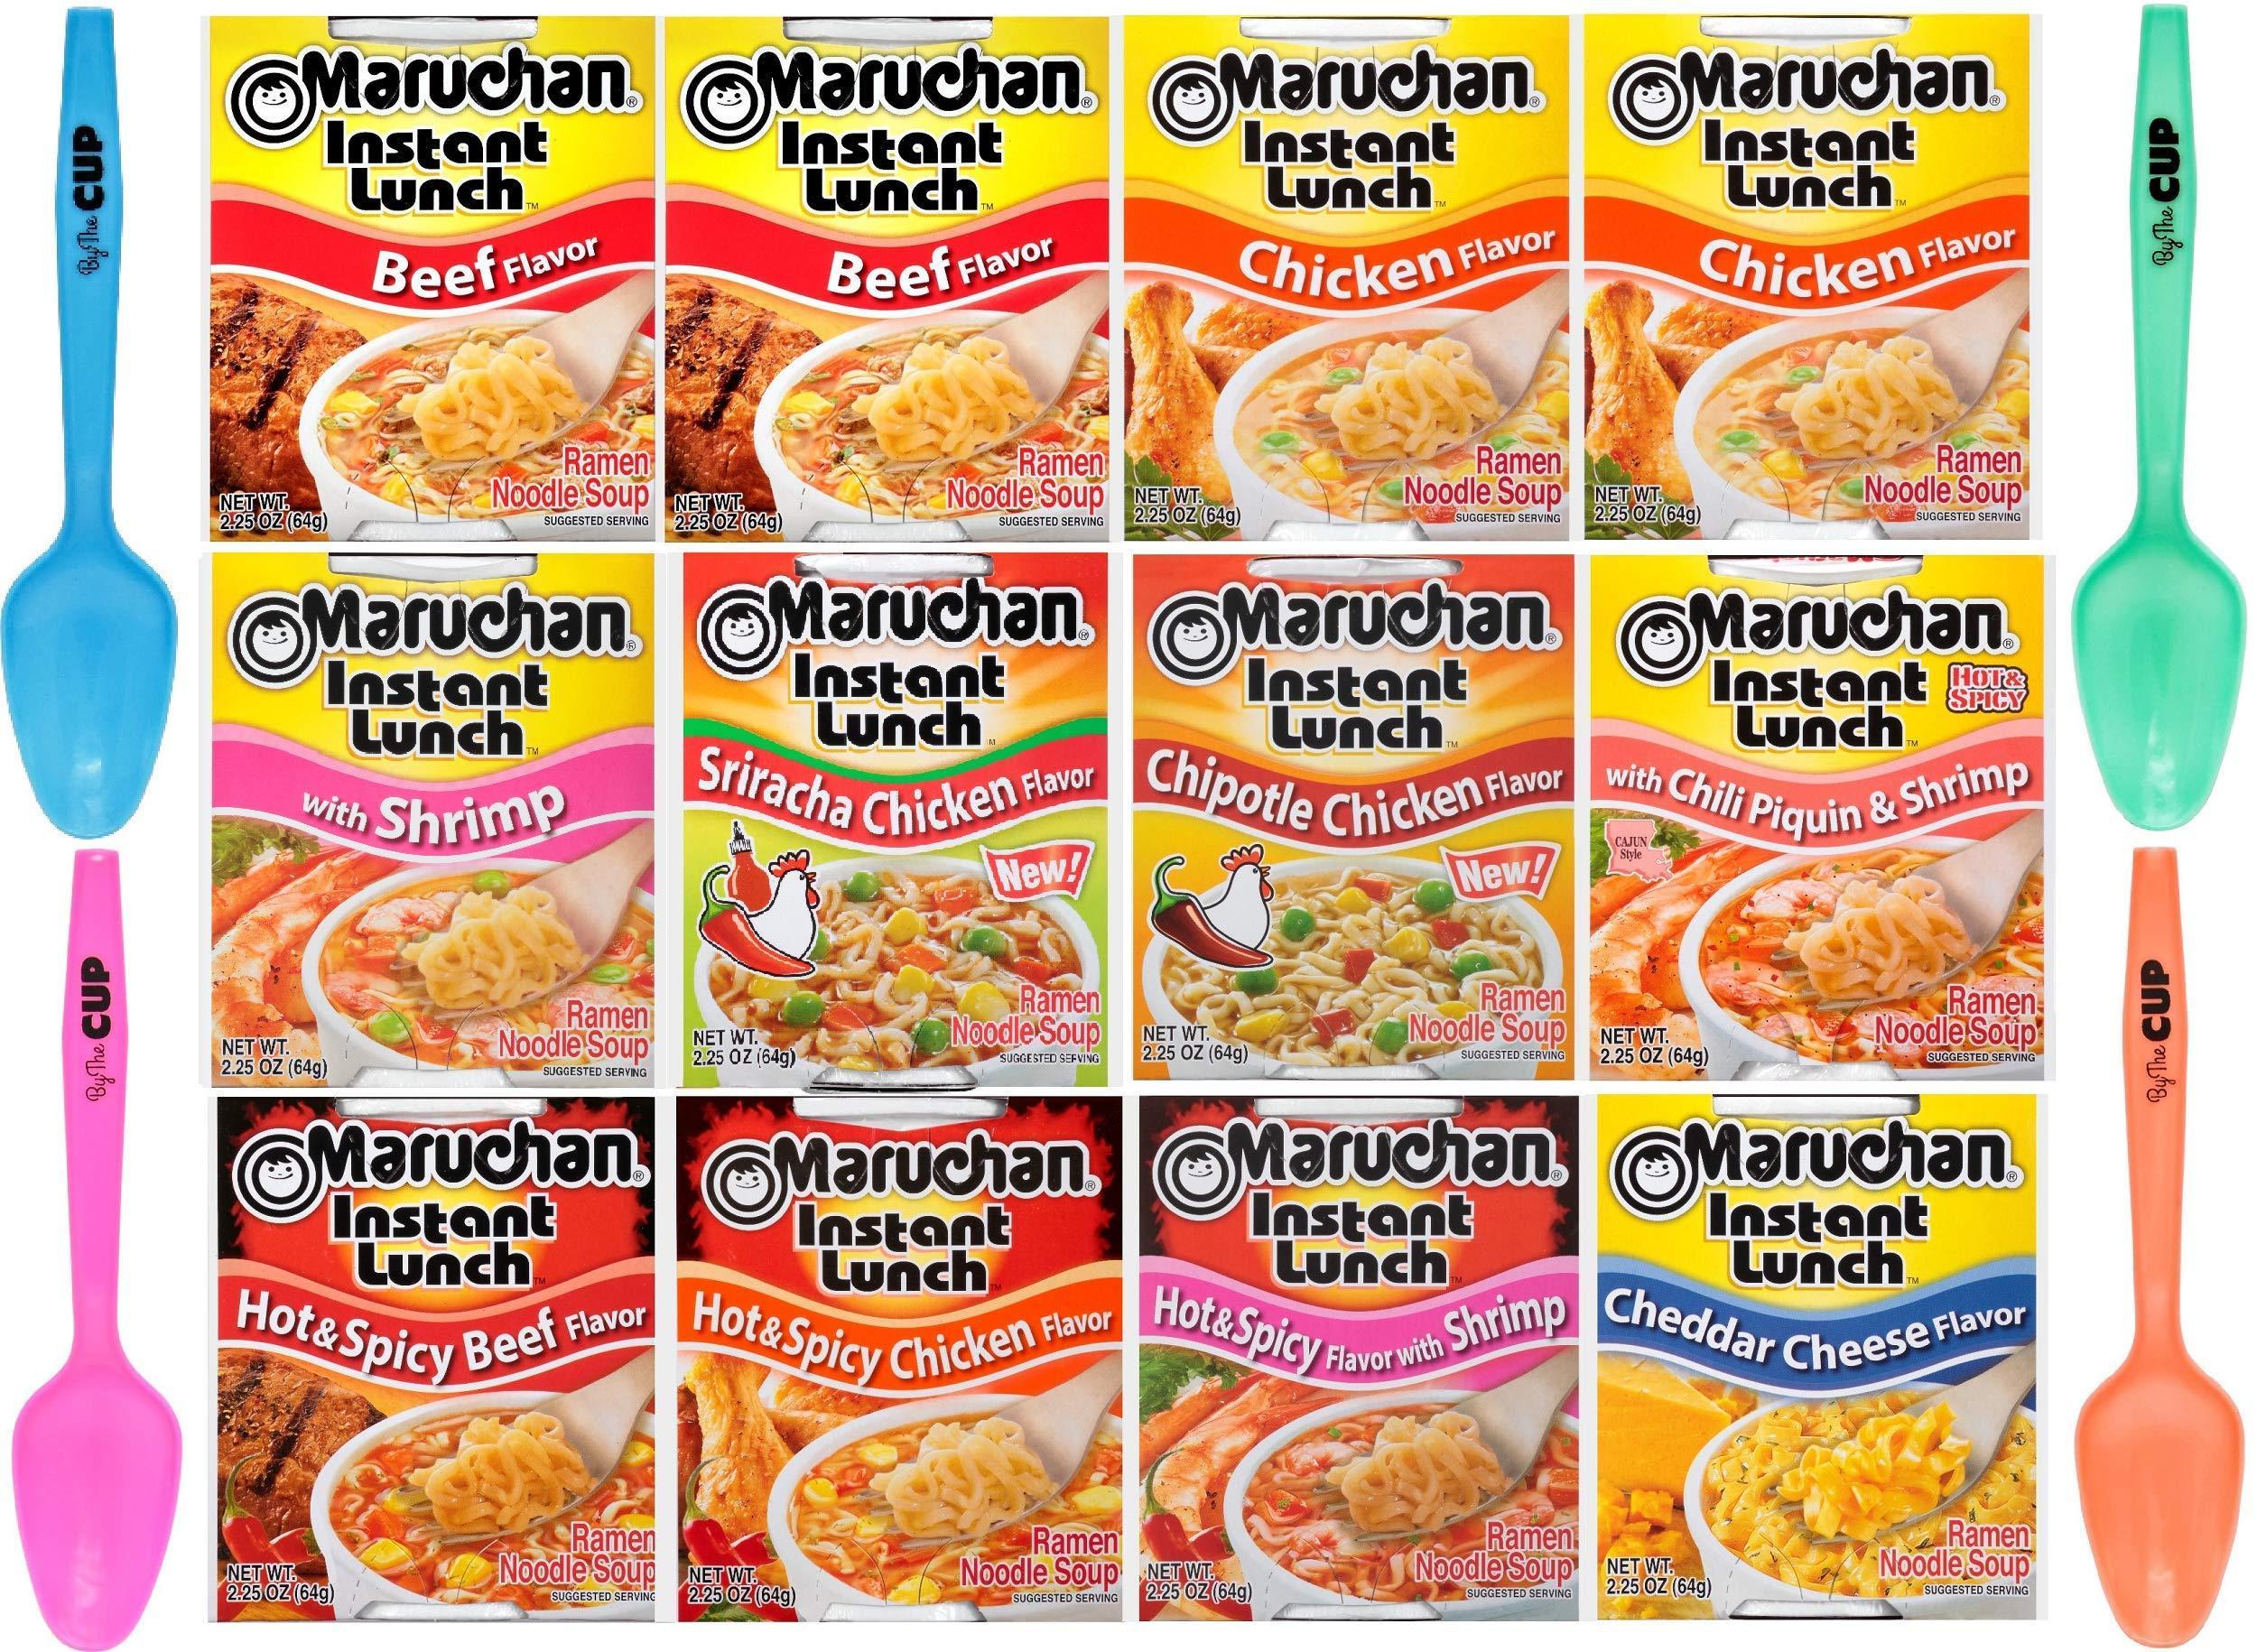 Instant Lunch Maruchan Logo - Amazon.com : Maruchan Ramen Instant Lunch - 10 flavor Variety 12 ...